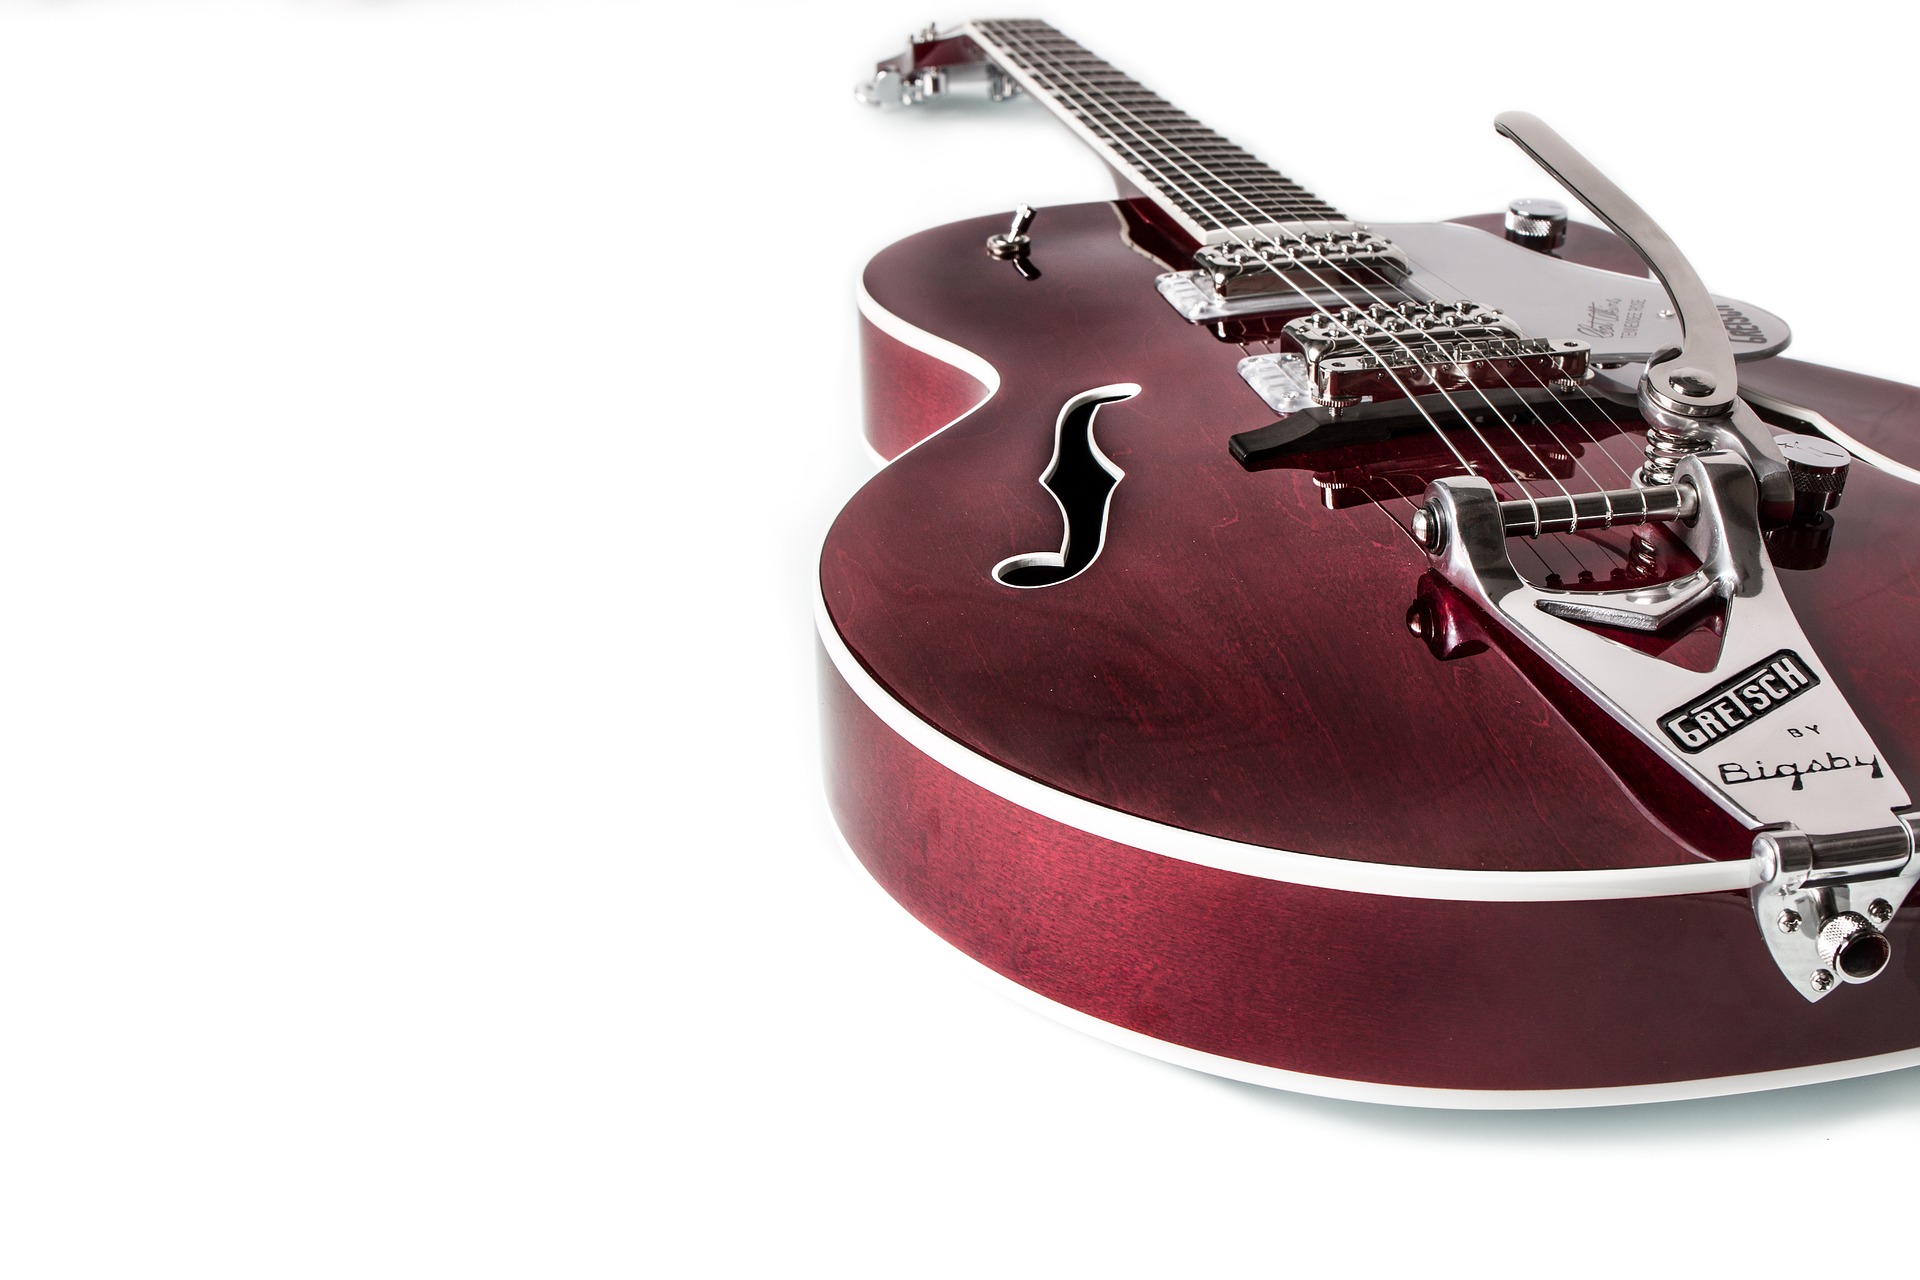 Полуакустическая гитара. Источник фото pixabay.com/